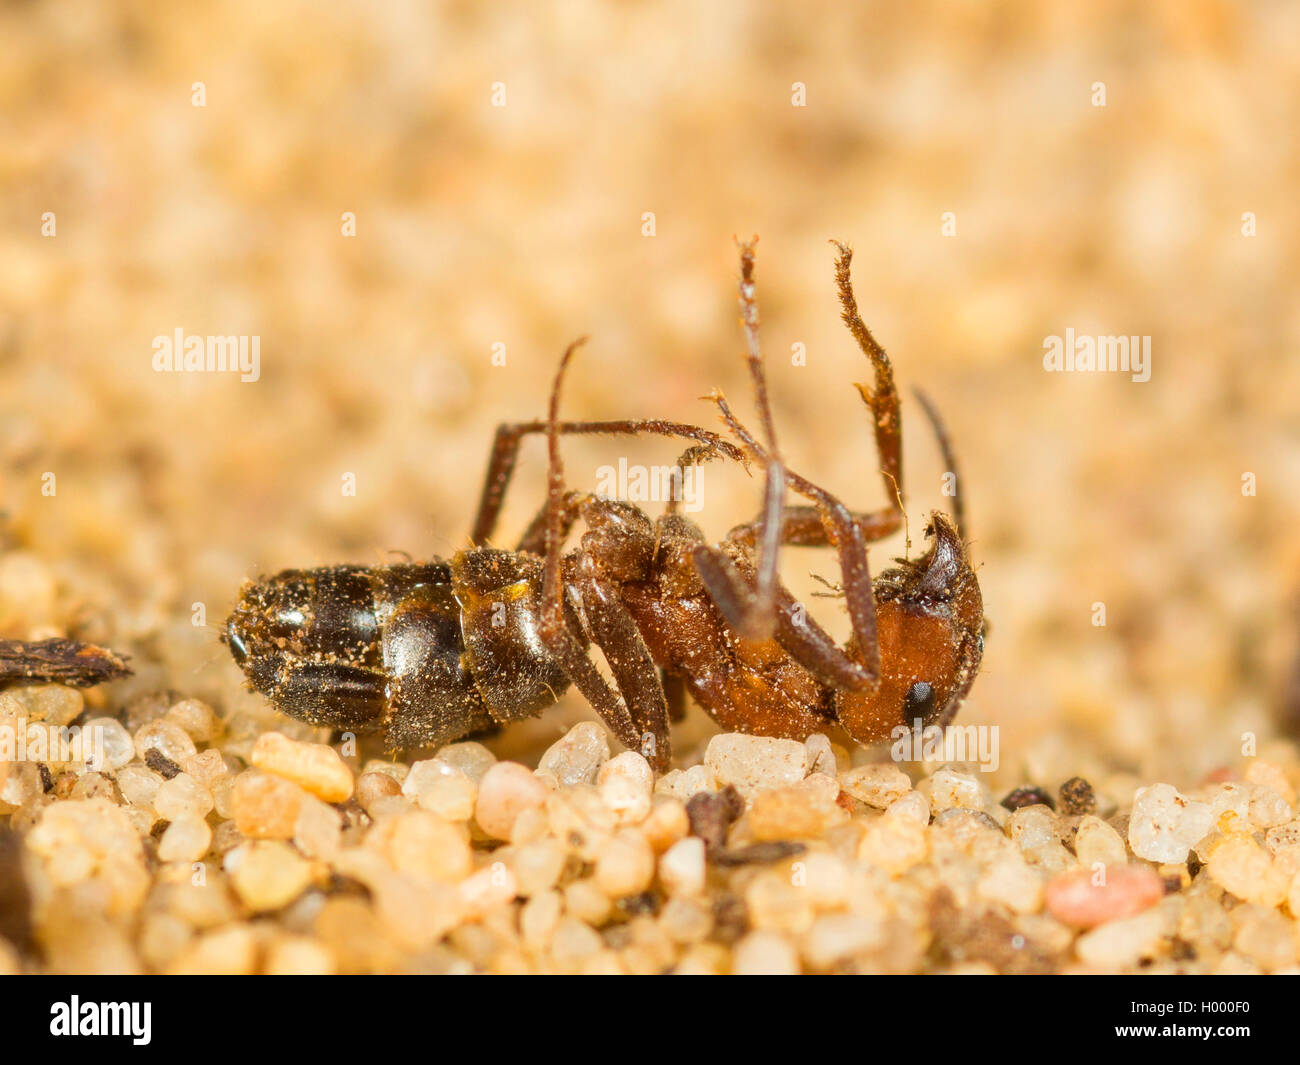 Europäische antlion (Euroleon nostras), saugte Ant (Formica rufibarbis) aus dem konischen Grube, Deutschland Stockfoto